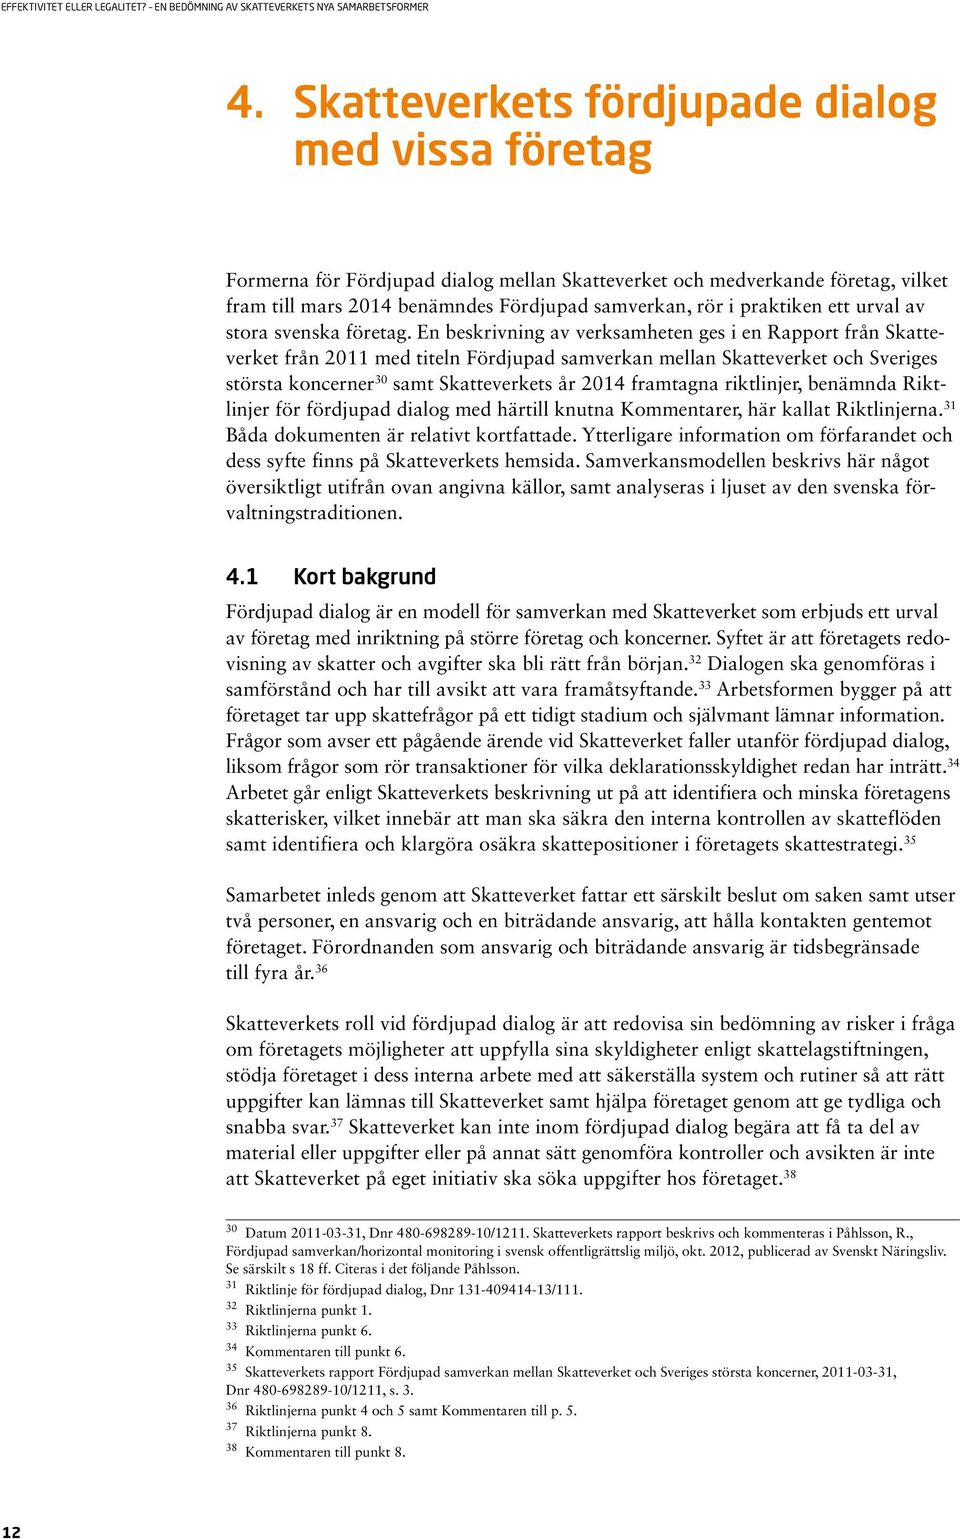 En beskrivning av verksamheten ges i en Rapport från Skatteverket från 2011 med titeln Fördjupad samverkan mellan Skatteverket och Sveriges största koncerner 30 samt Skatteverkets år 2014 framtagna